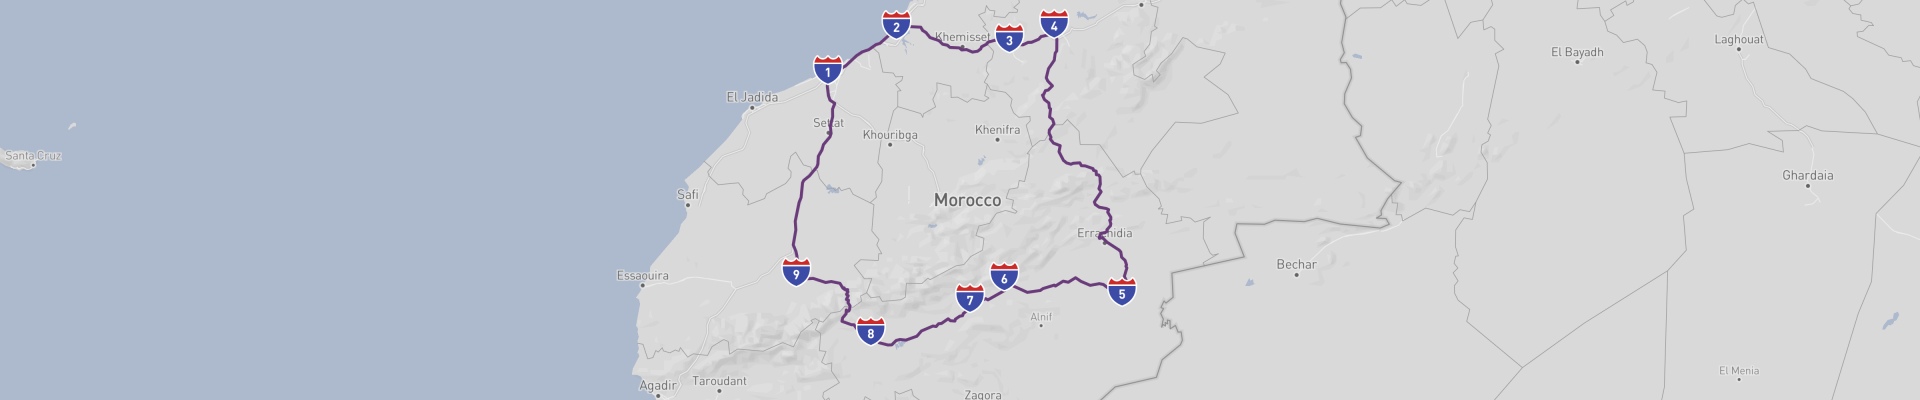 Viagem de carro com destaque para Marrocos